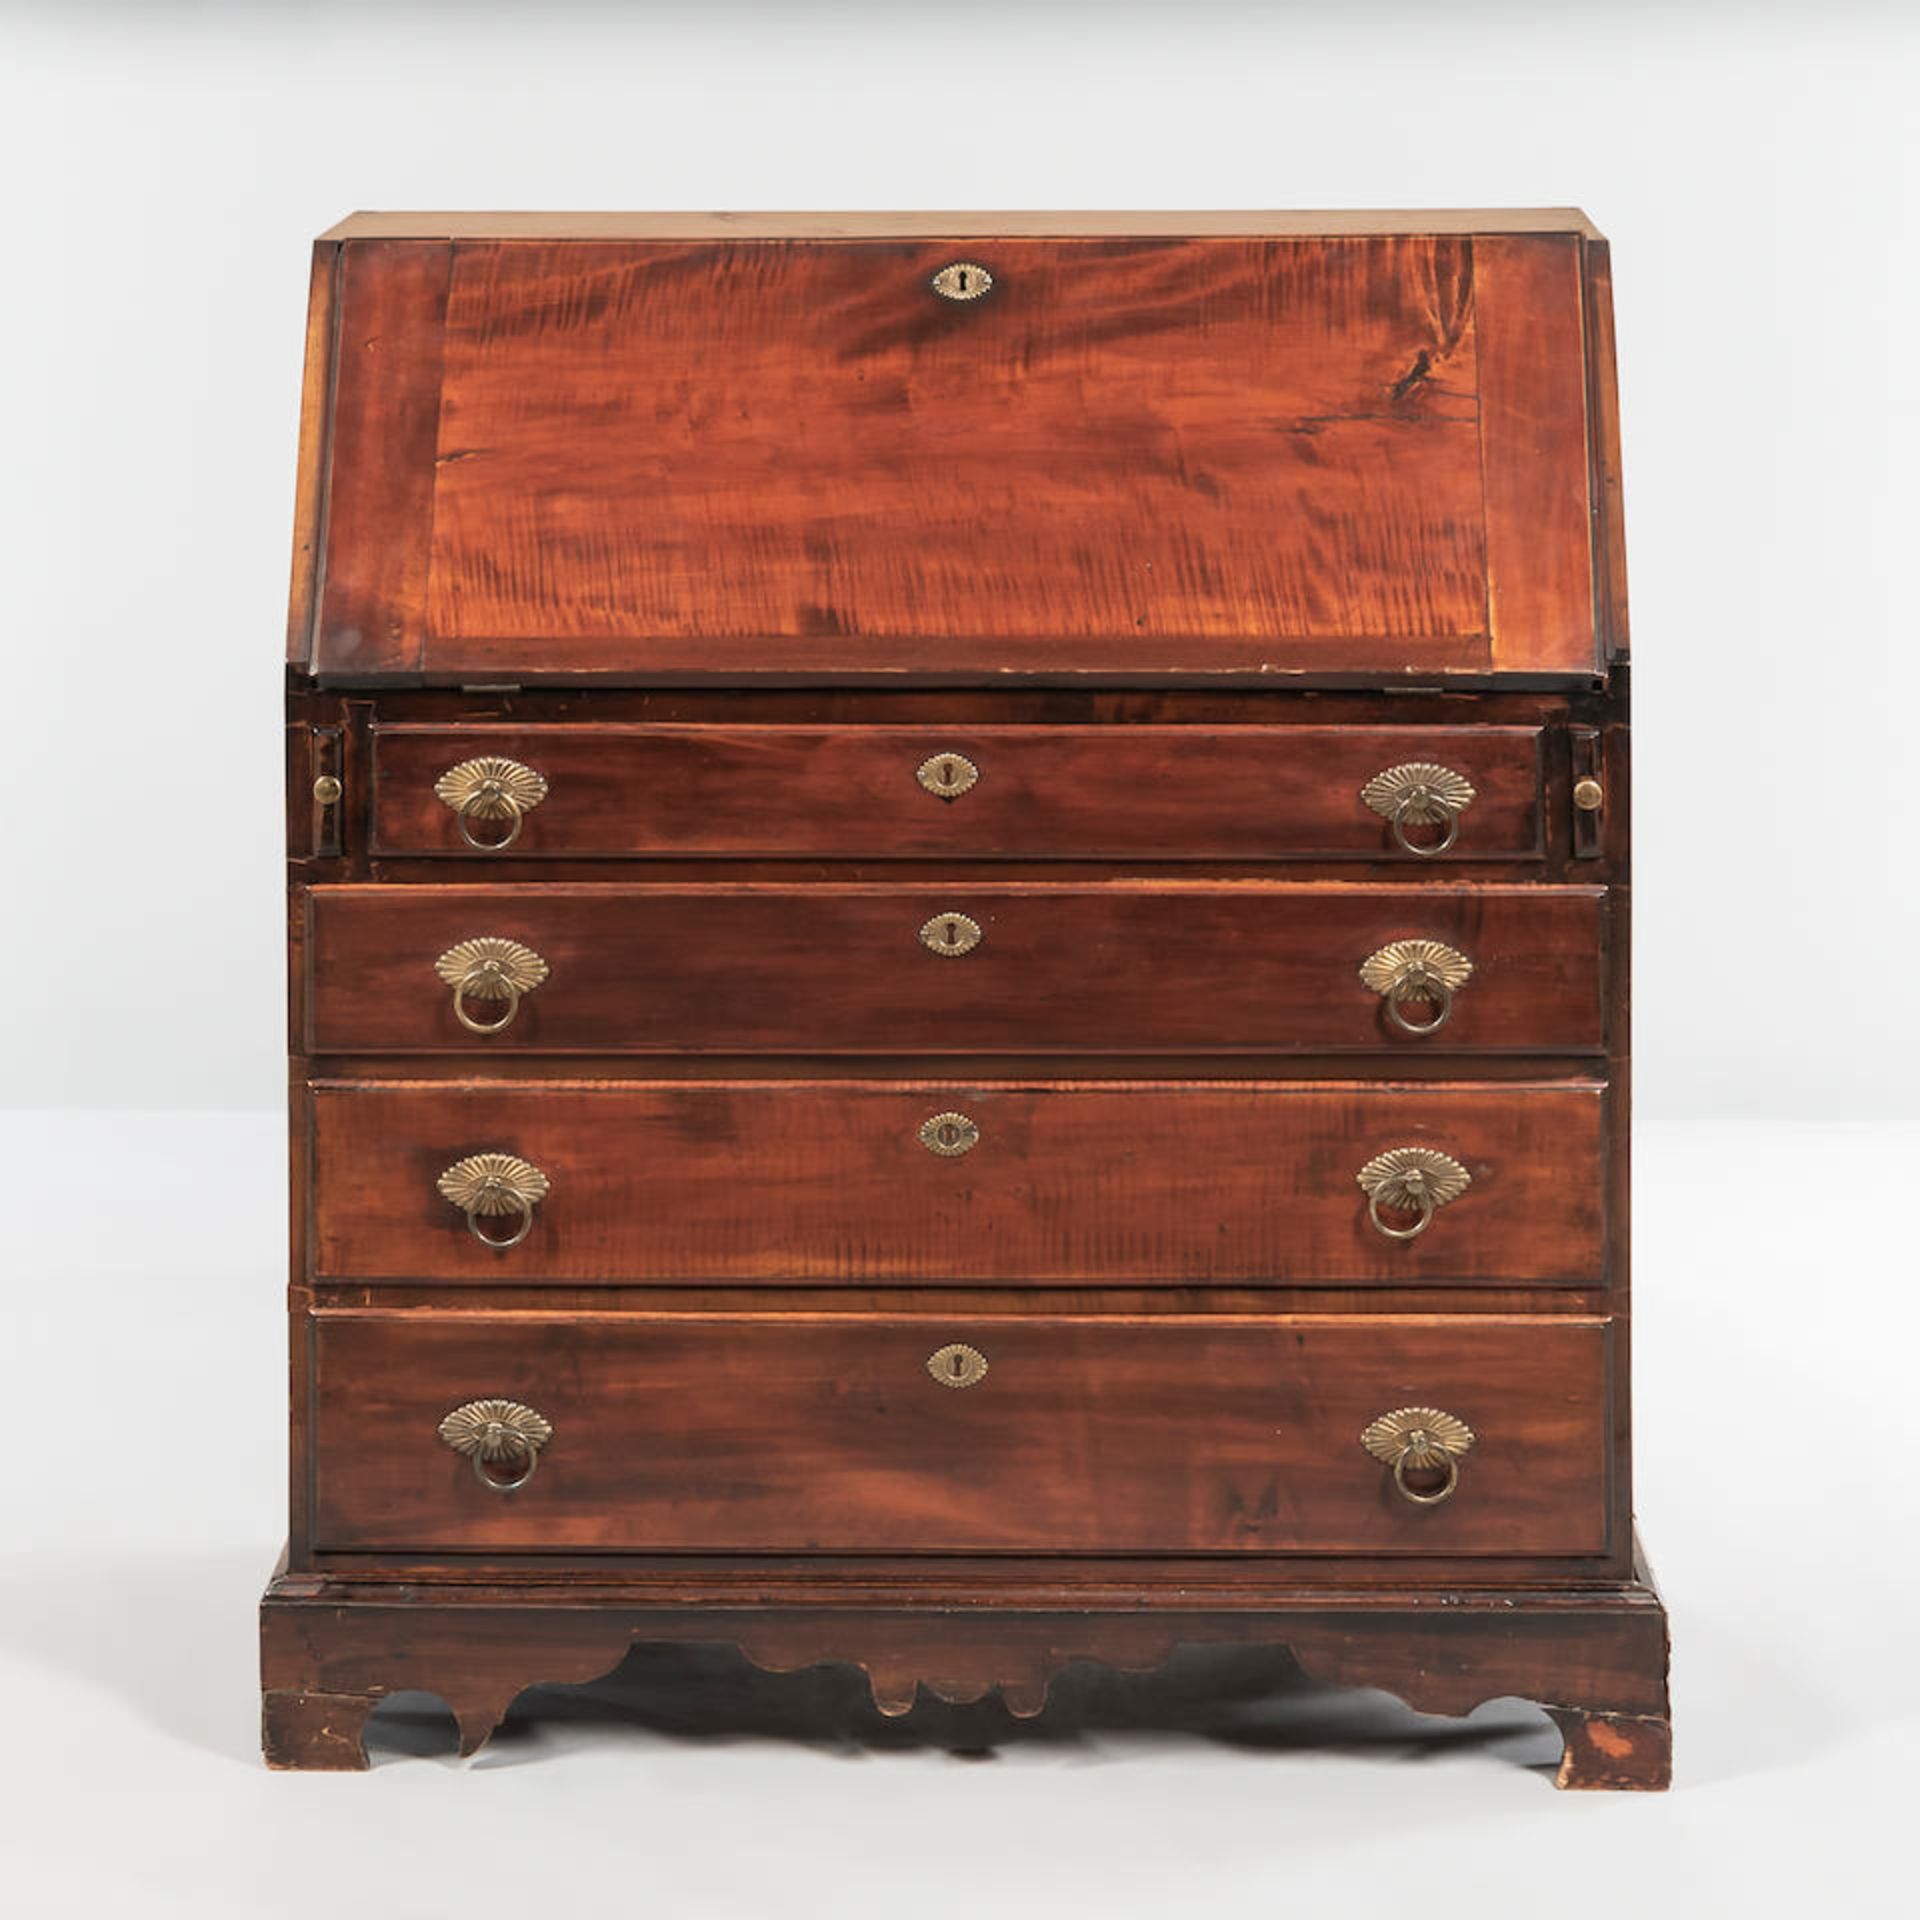 Maple Slant-lid Desk, Vermont, c. 1800. - Image 2 of 2